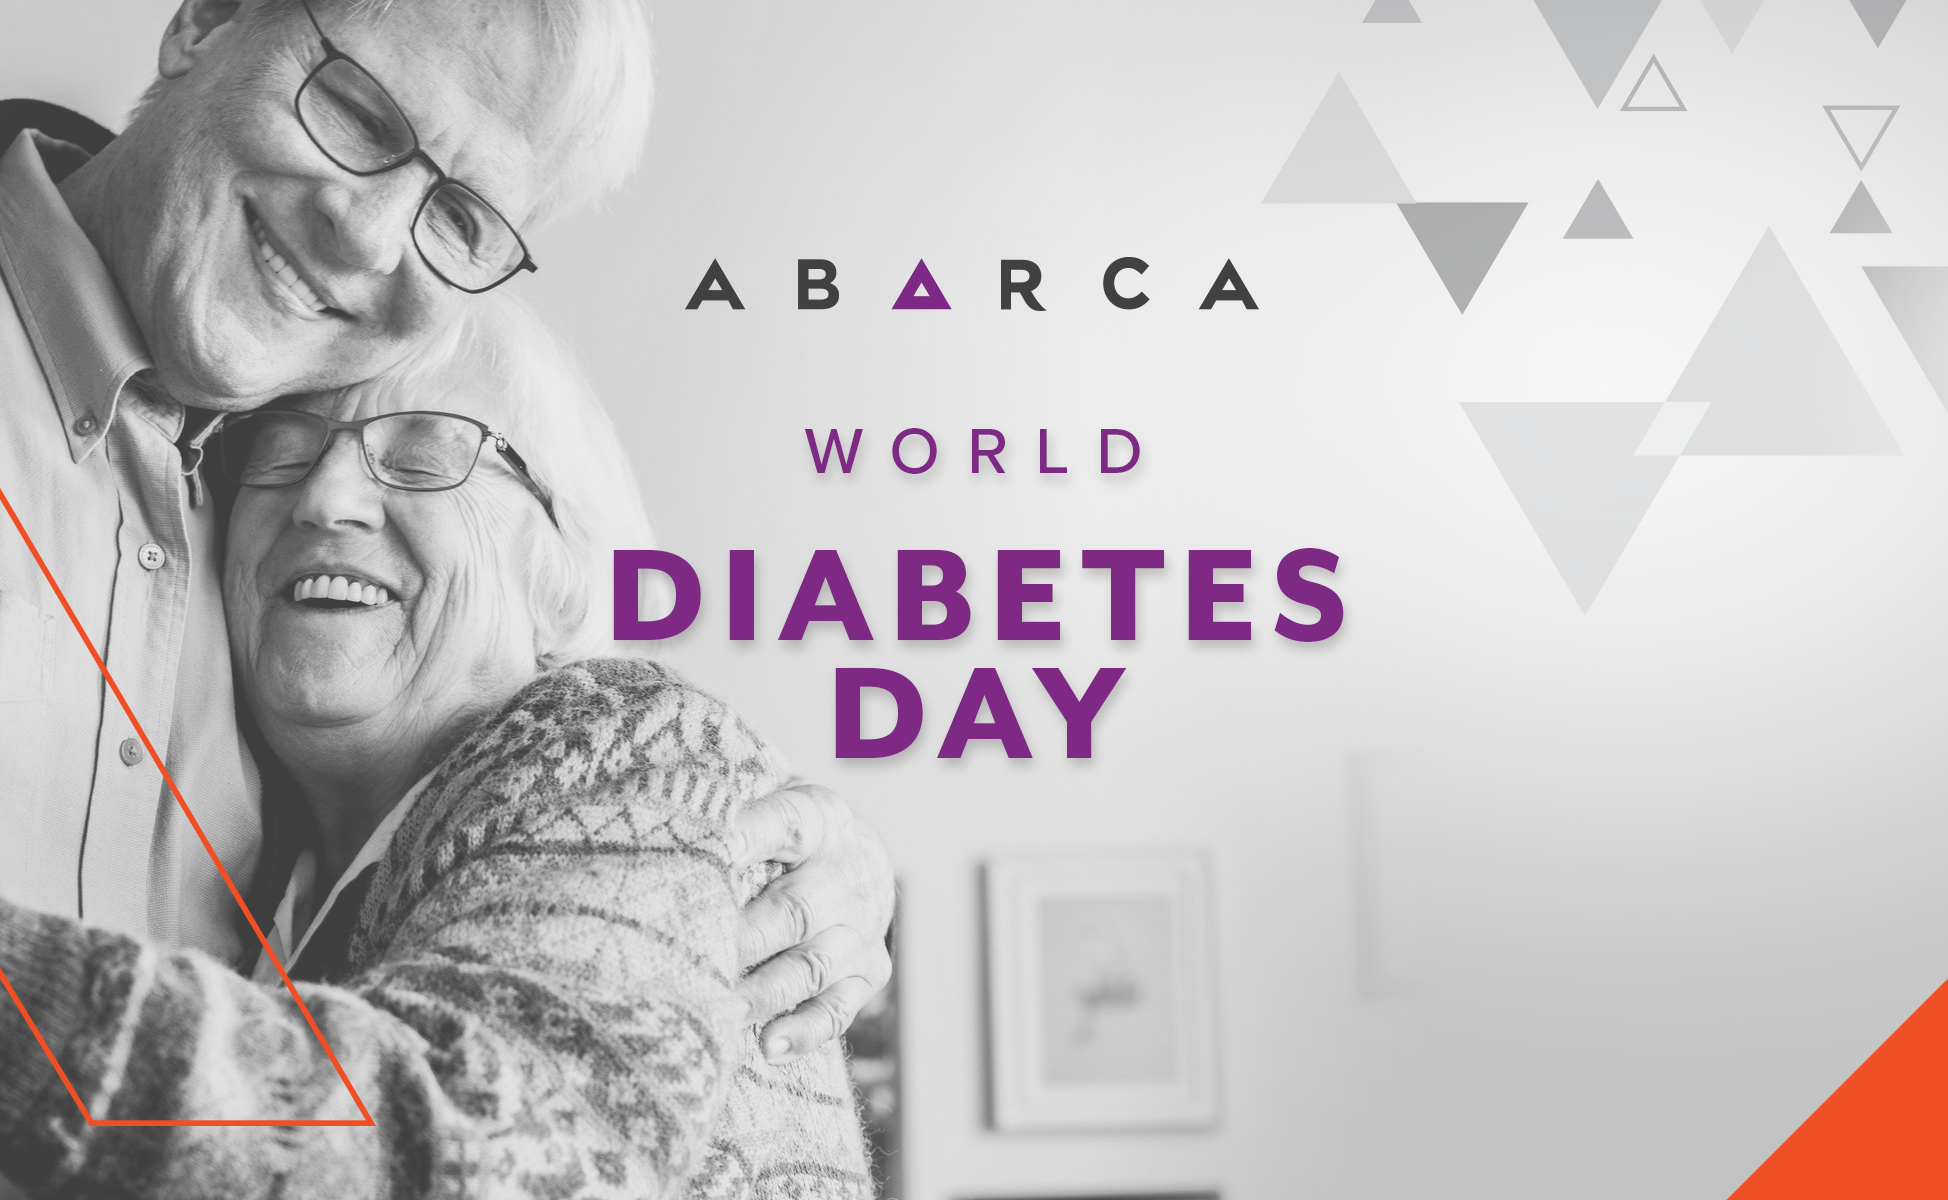 Abarca brings awareness to diabetes